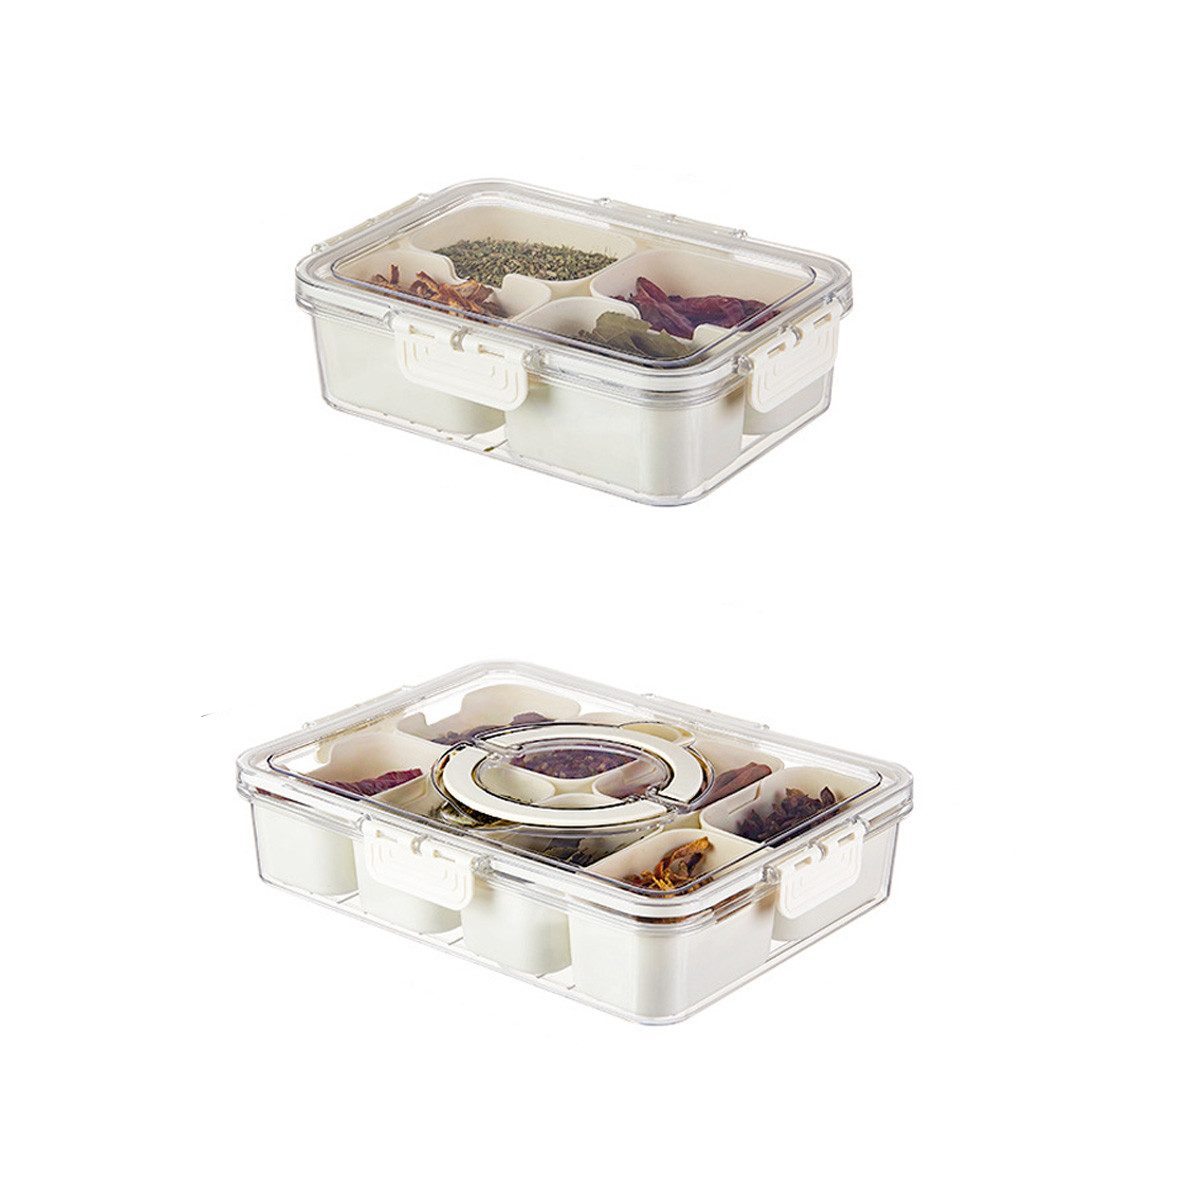 yozhiqu Frischhaltedose Geteiltes Tablett mit Deckel und Griffen – Snackbox, Feinkostbehälter, tragbare Snackplatten – transparente Aufbewahrungsbox für Süßigkeiten